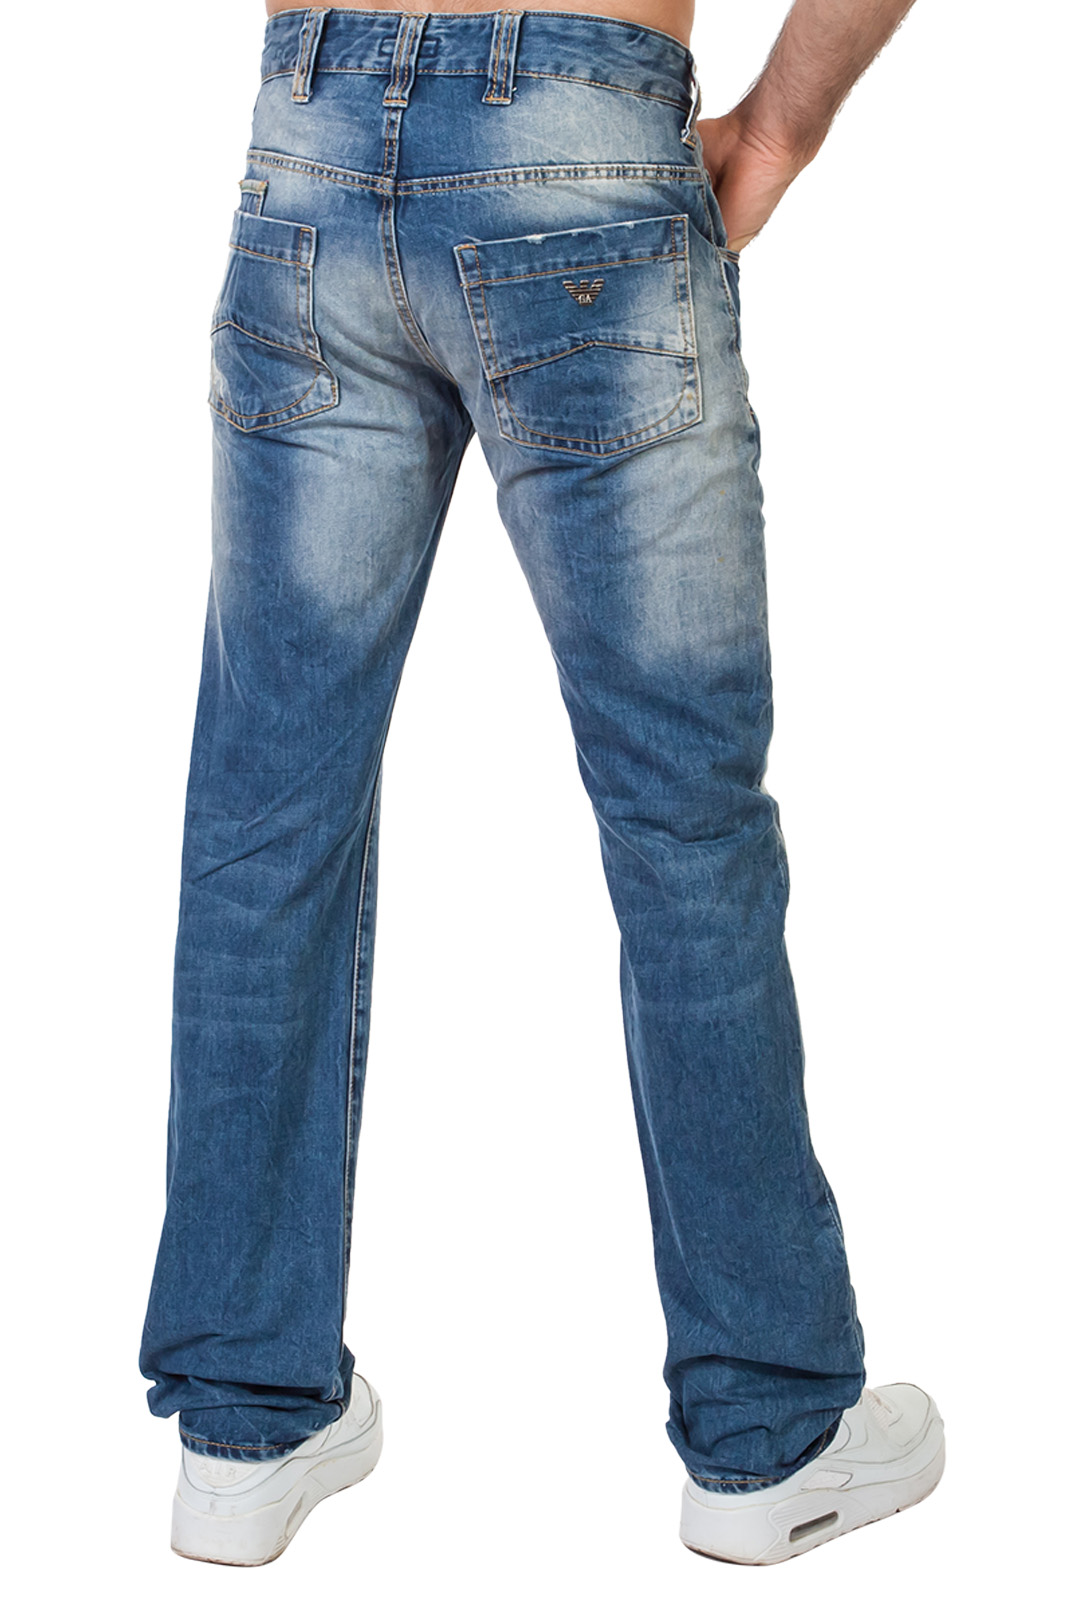 Недорогие джинсы – наличие